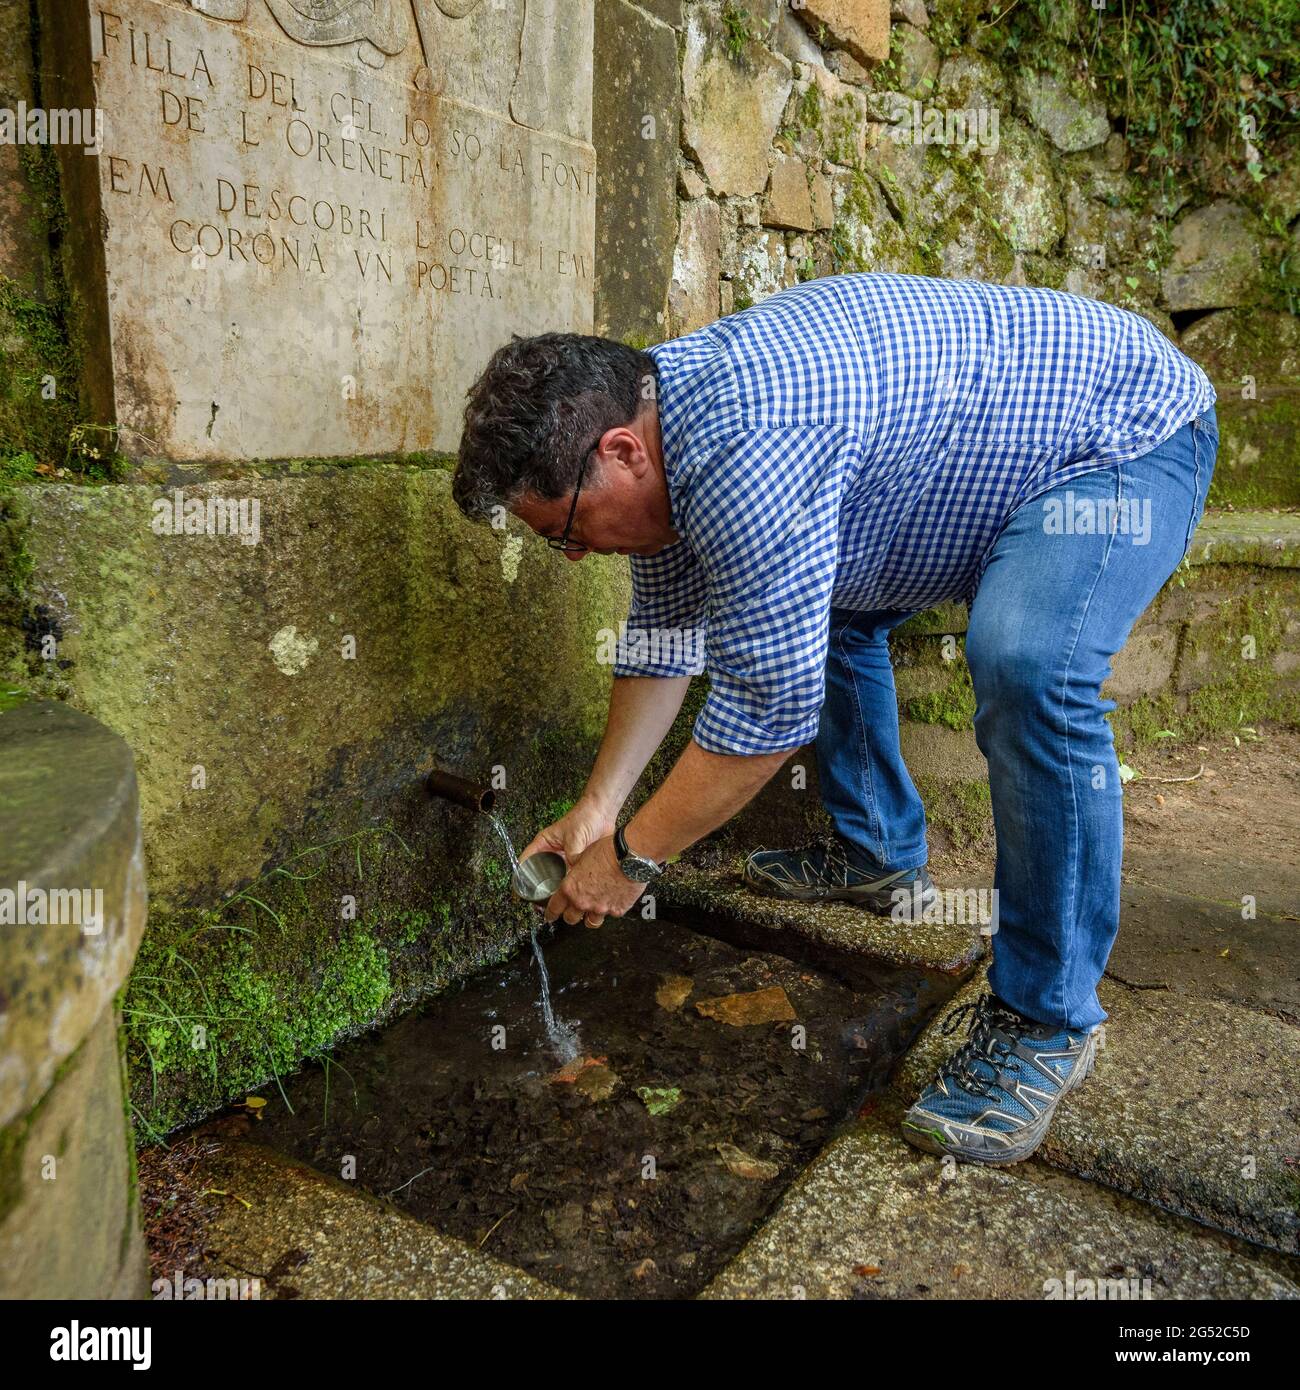 Der Oreneta-Brunnen (Schwalbe) in Viladrau im Sommer, im Montseny (Osona, Katalonien, Spanien) ESP: La fuente de la Oreneta en Viladrau en verano Stockfoto